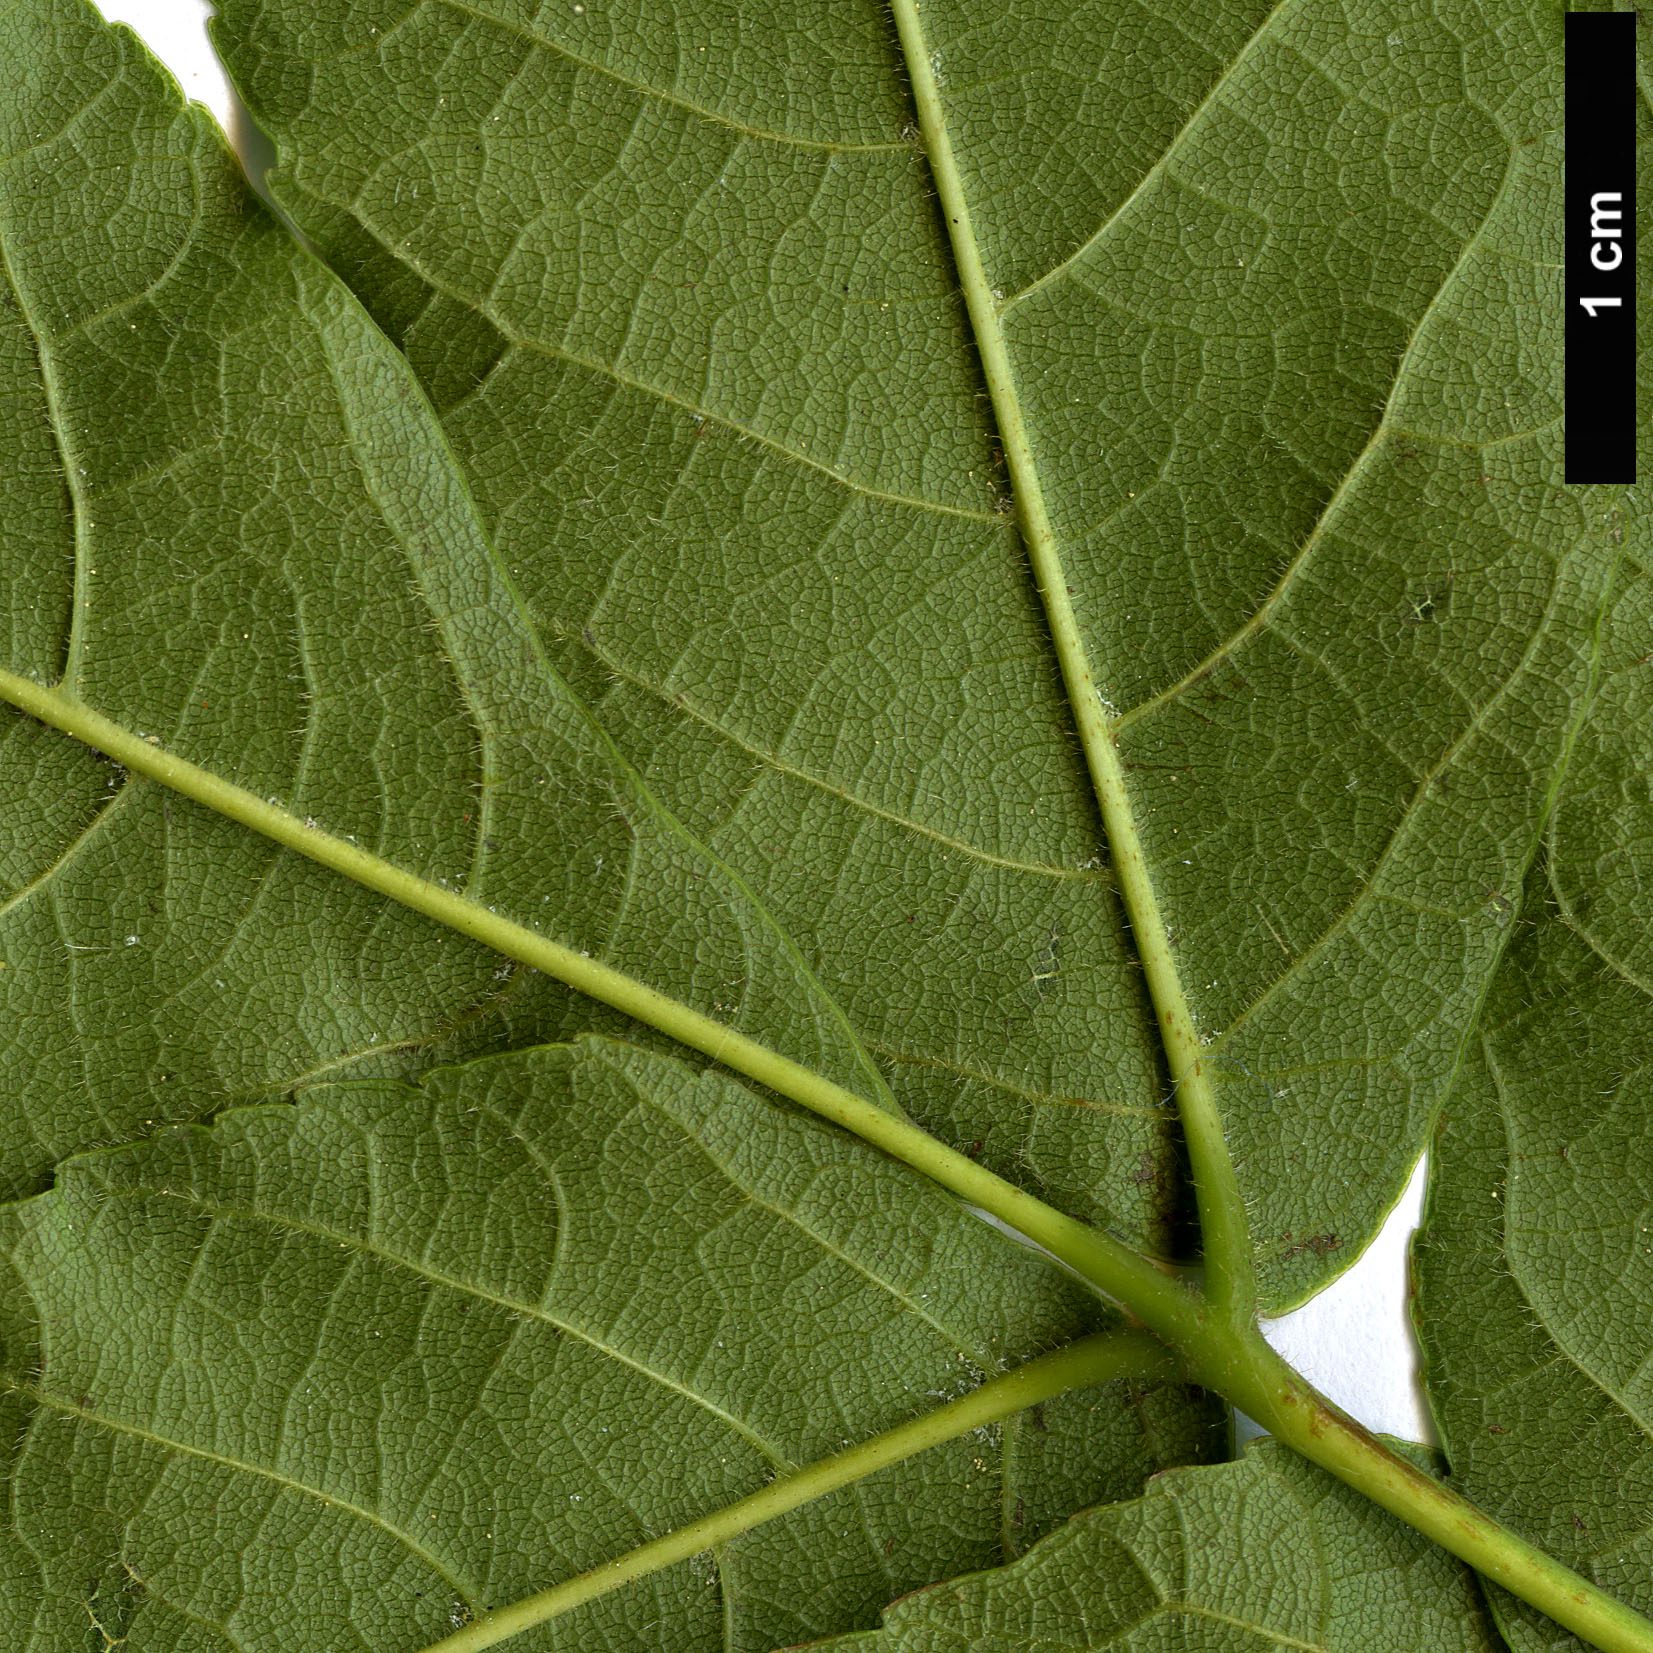 High resolution image: Family: Sapindaceae - Genus: Ungnadia - Taxon: speciosa